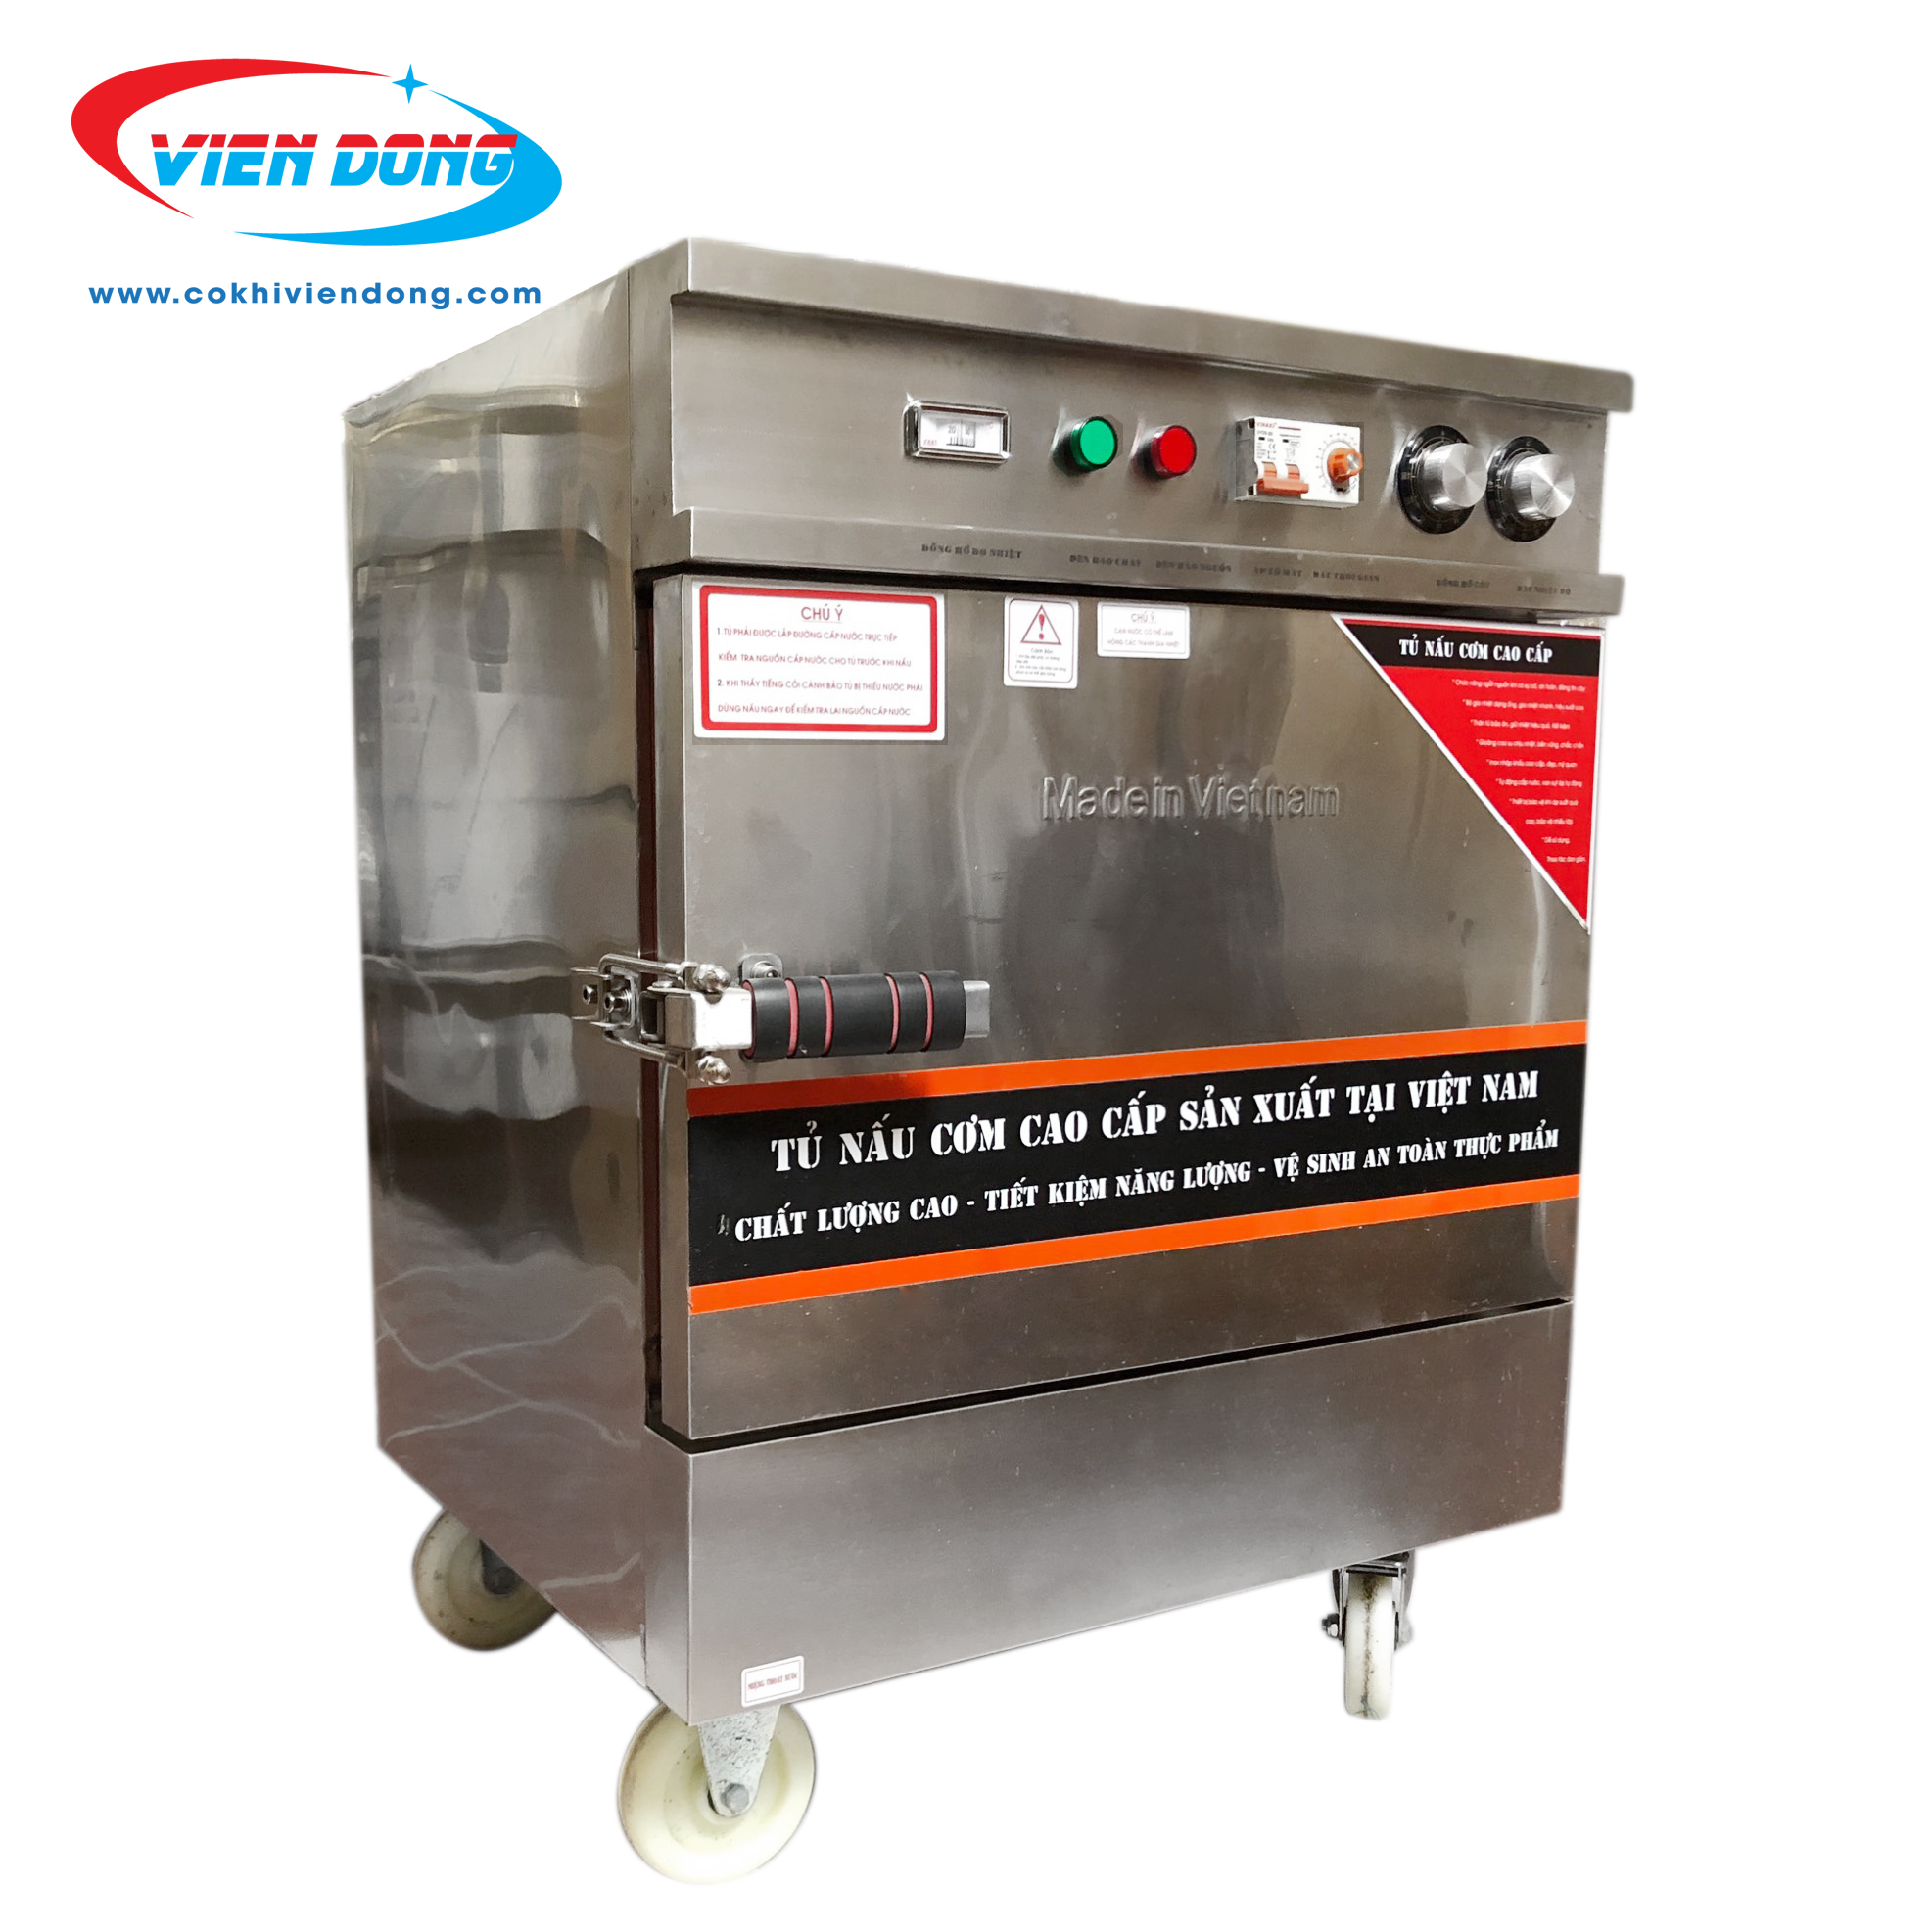 Báo giá tủ nấu cơm công nghiệp - Cơ Khí Trọng Tuyết -Dây Truyền Sản Xuất  Công Nghiệp - Máy Chế Biến Thực Phẩm